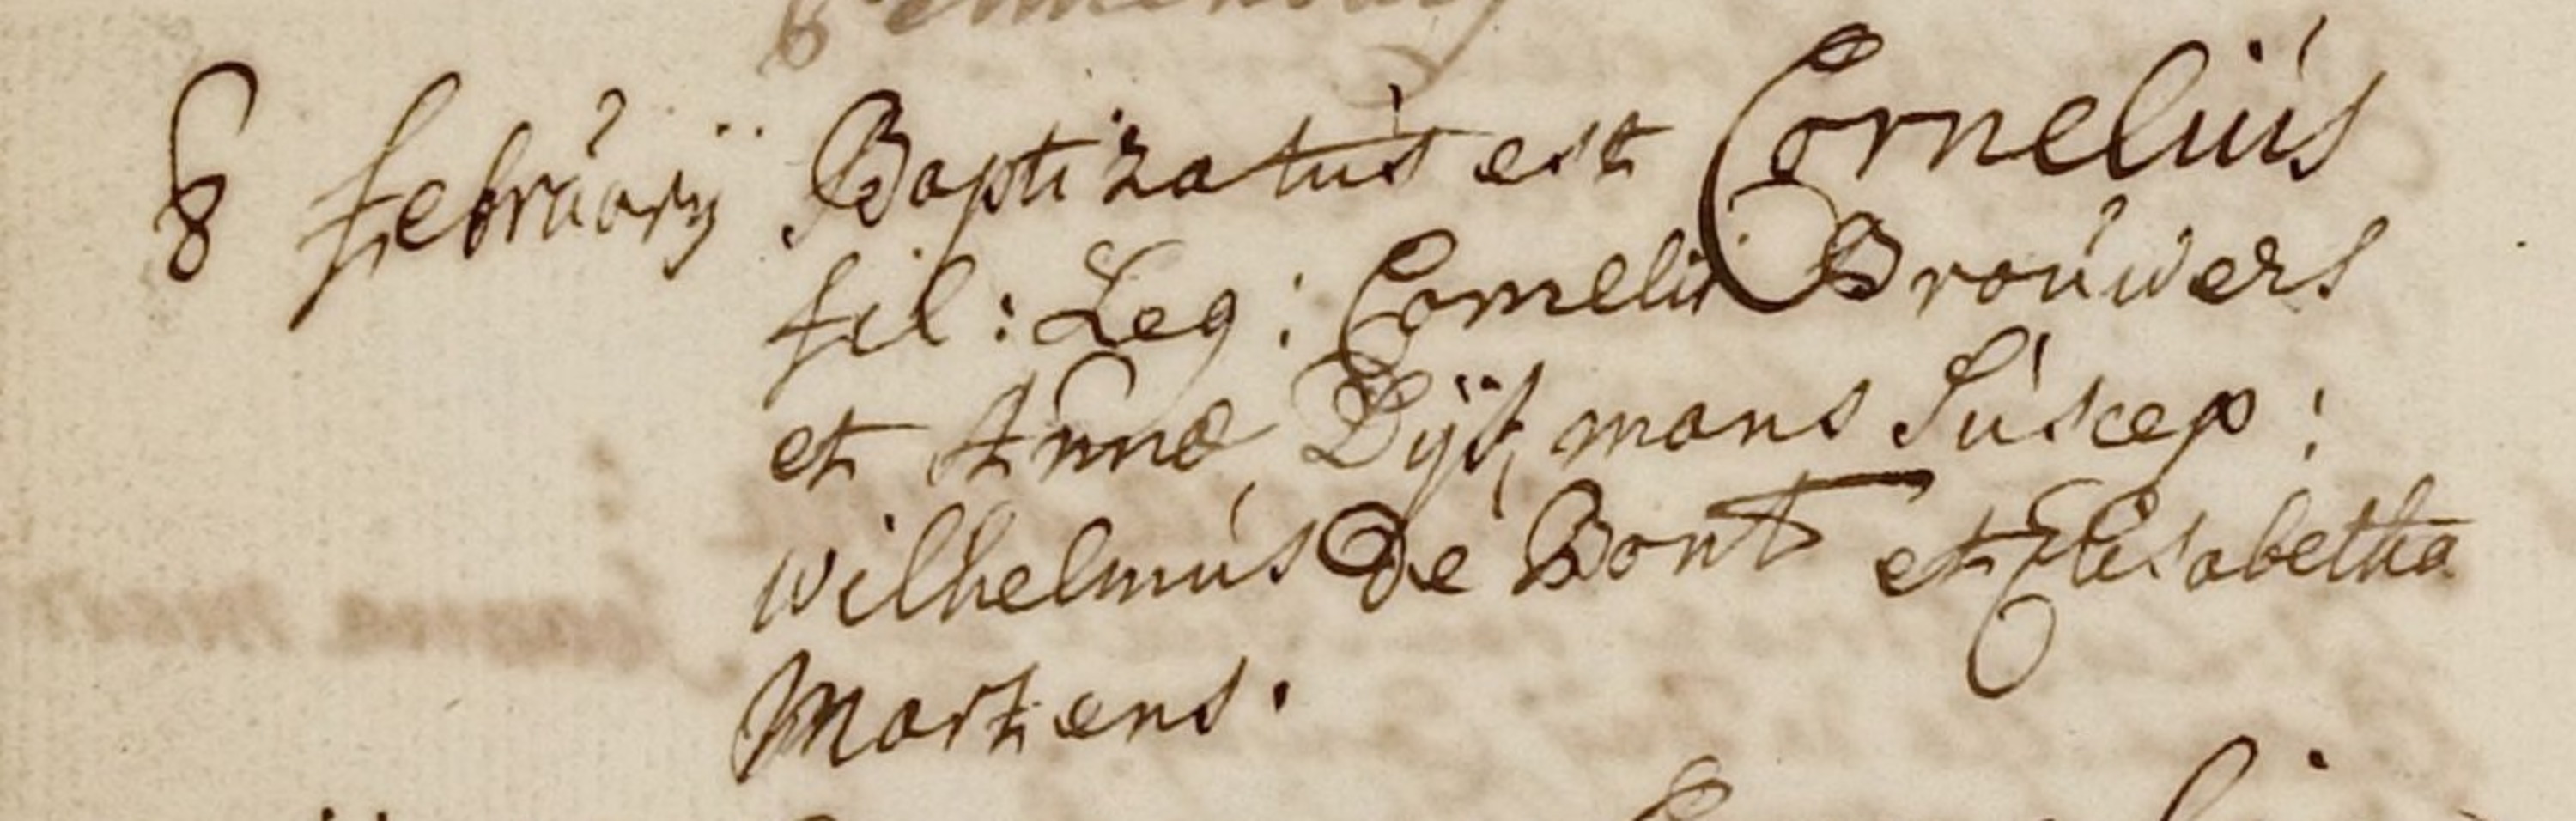 brouwers_cornelius__geboren_op_8_februari_1770_in_alphen.jpg